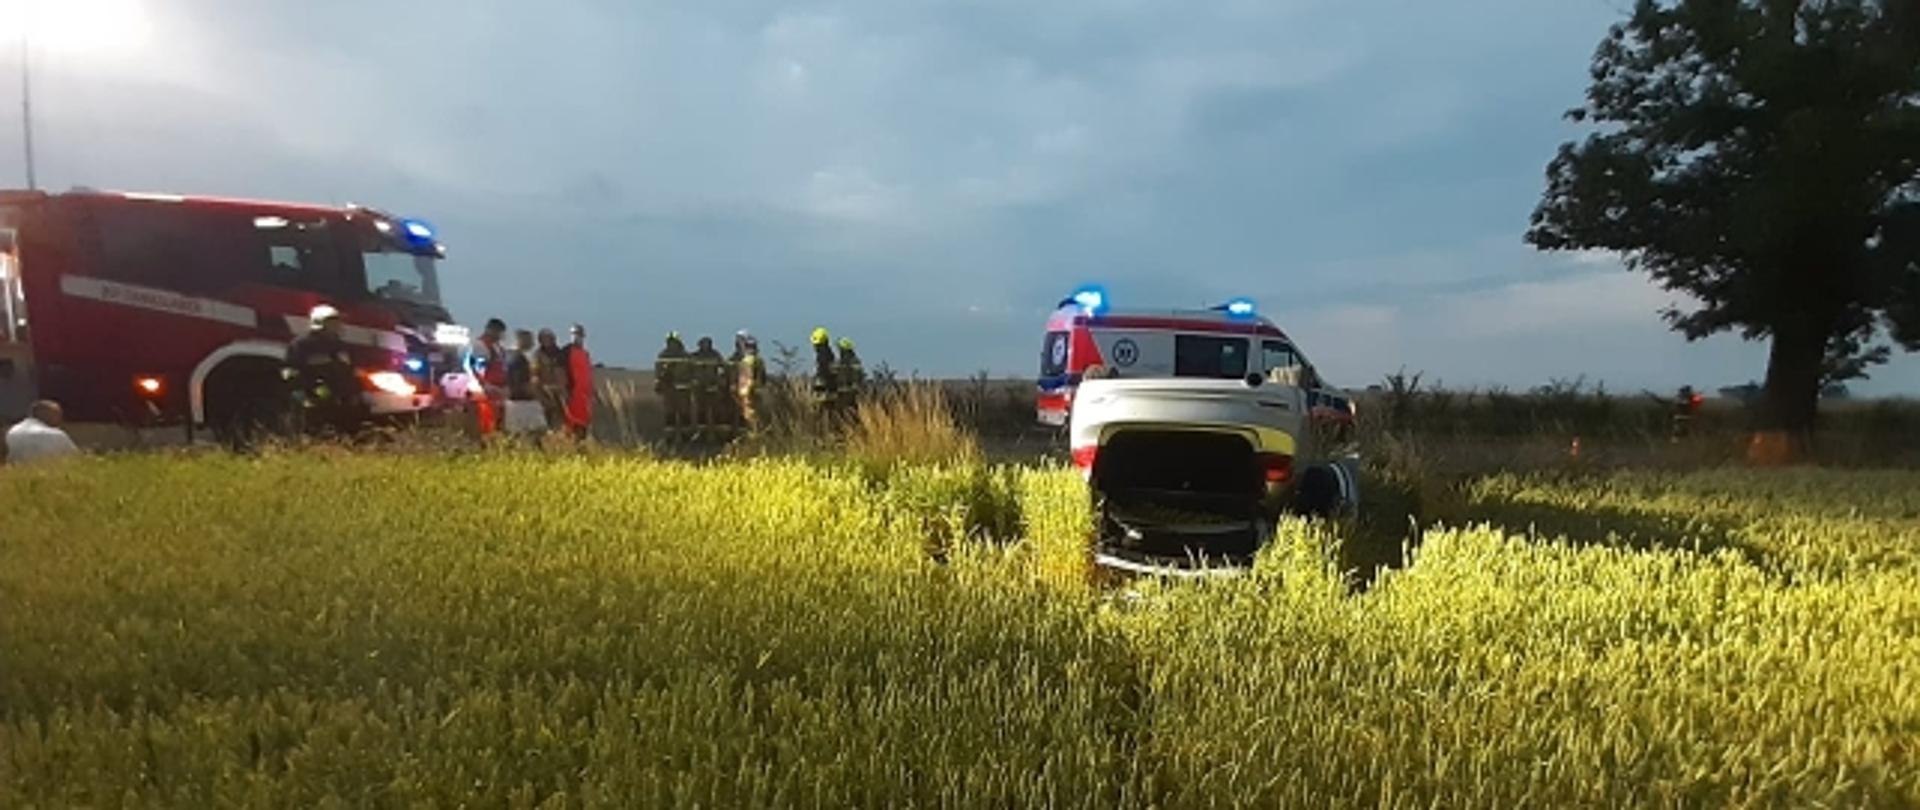 Na zdjęciu widać auto w polu oraz wóz strażacki